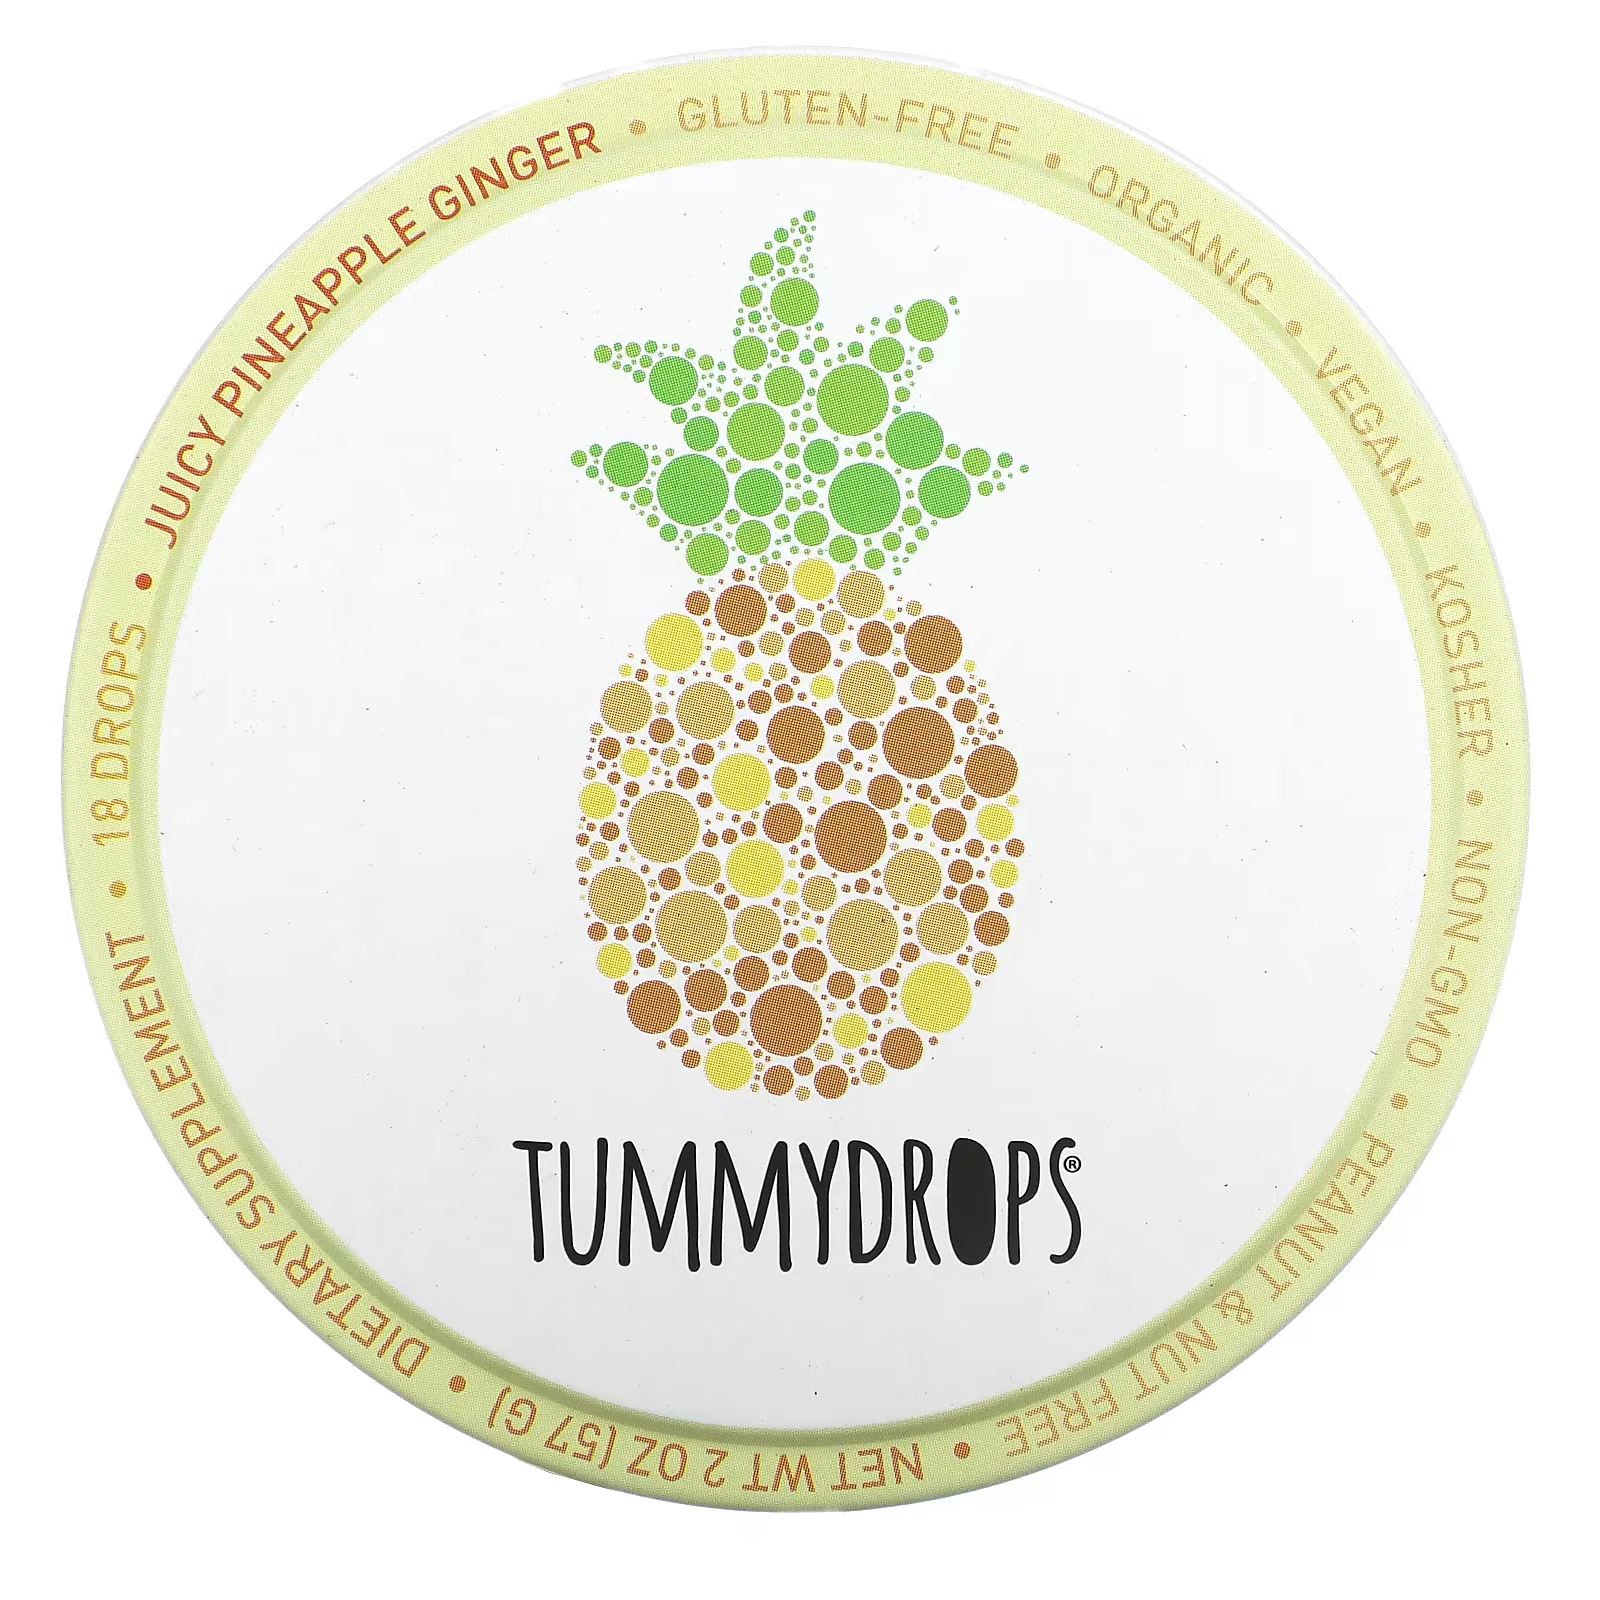 Капли имбирные Tummydrops ананасовые, 18 капель tummydrops органическая зимняя сахарная слива и имбирь 18 капель 57 г 2 унции